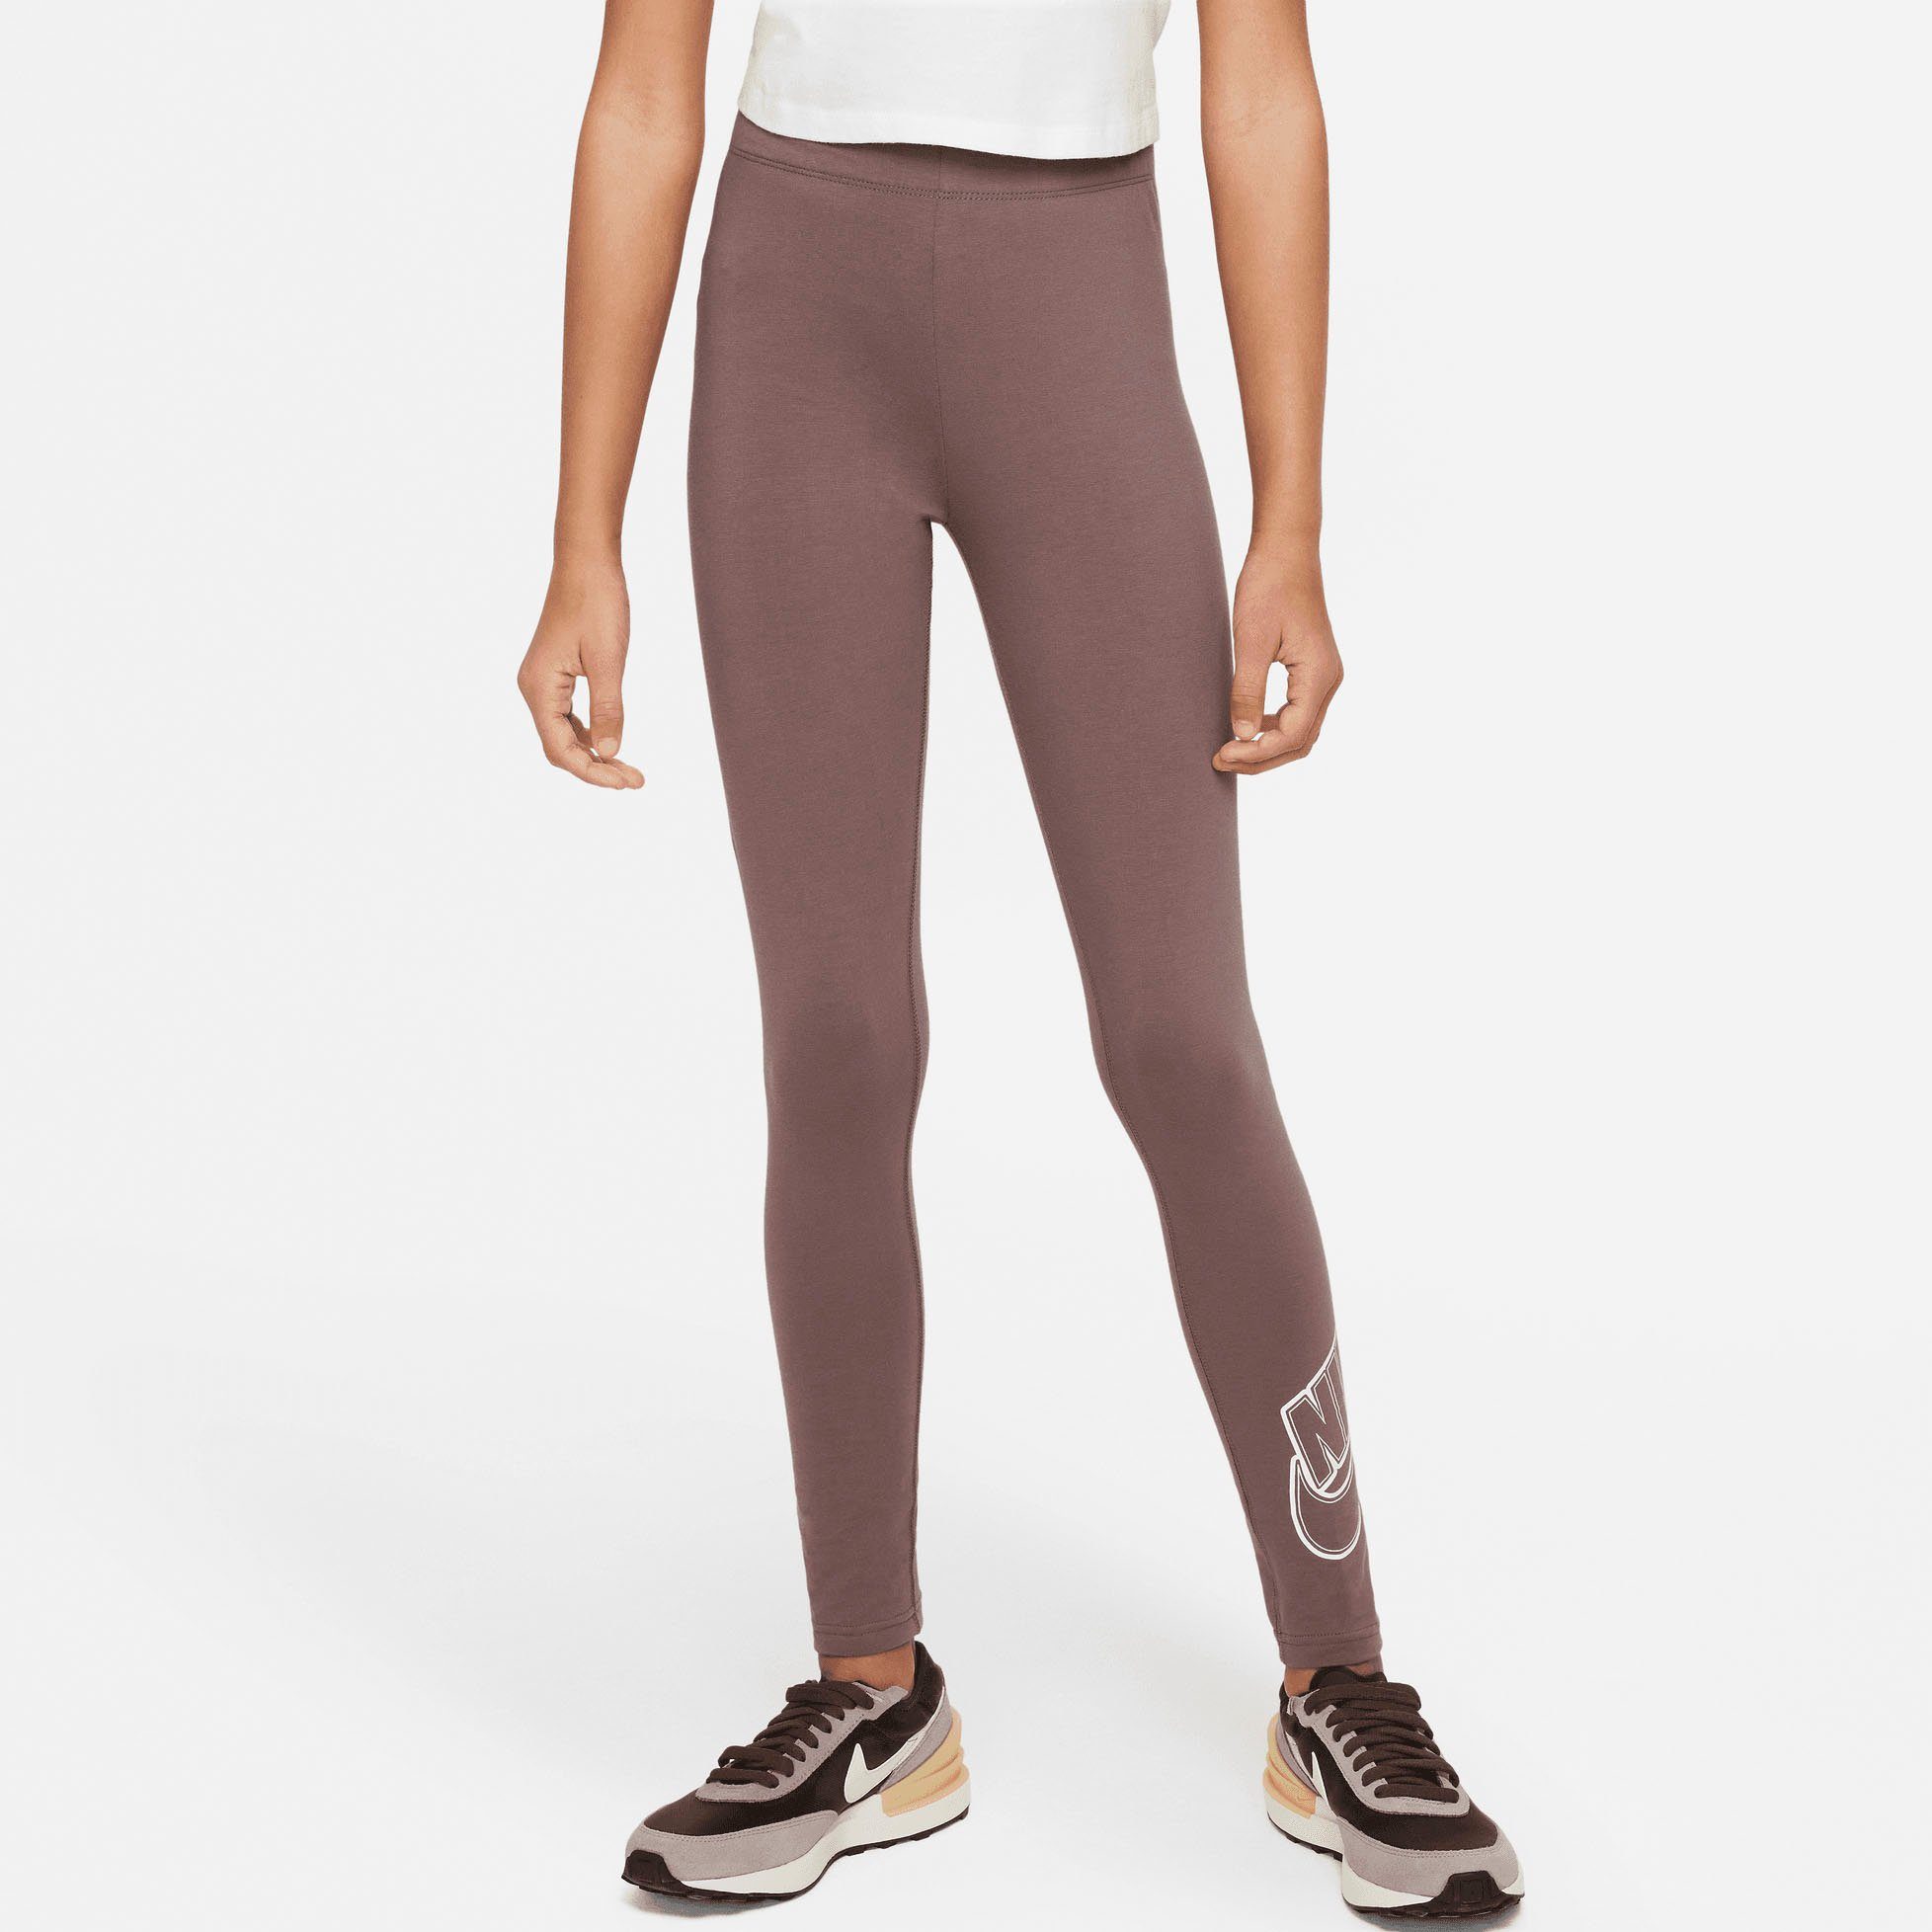 Leggings Kids' Leggings PLUM Graphic (Girls) Big Favorites ECLIPSE/WHITE Nike Sportswear